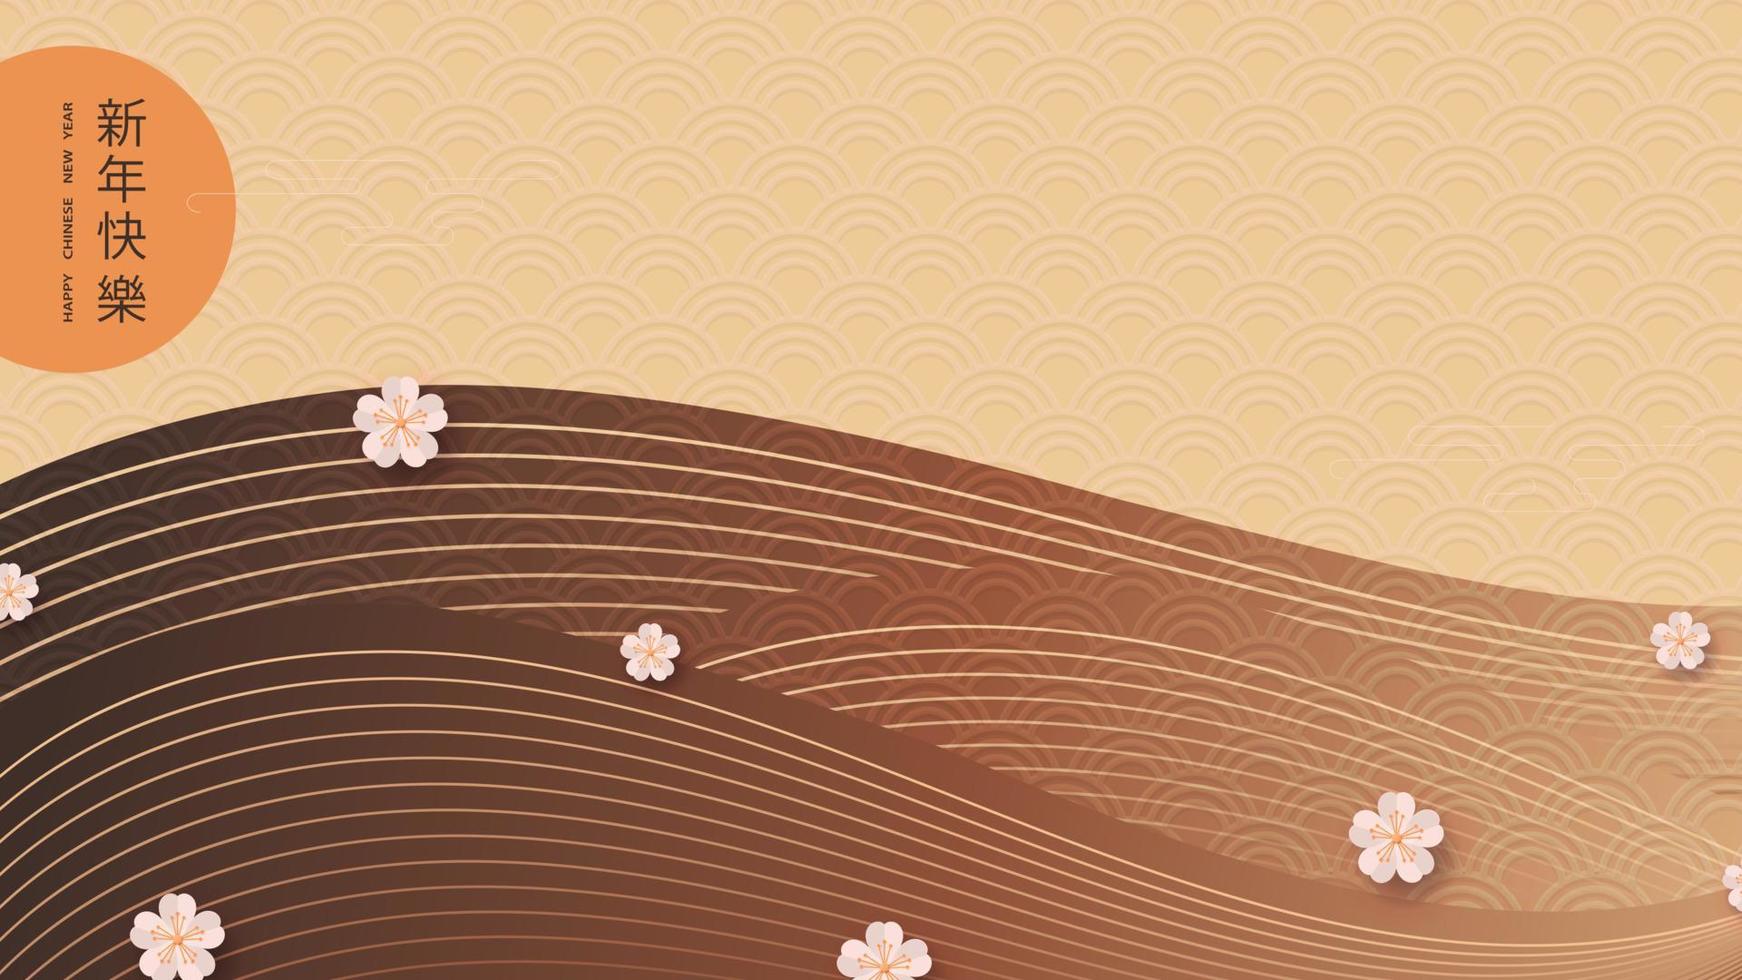 feliz año nuevo chino. tarjeta estilizada con flores de sakura y diseño de montaña en estilo oriental. traducción del chino - feliz año nuevo. ilustración vectorial vector